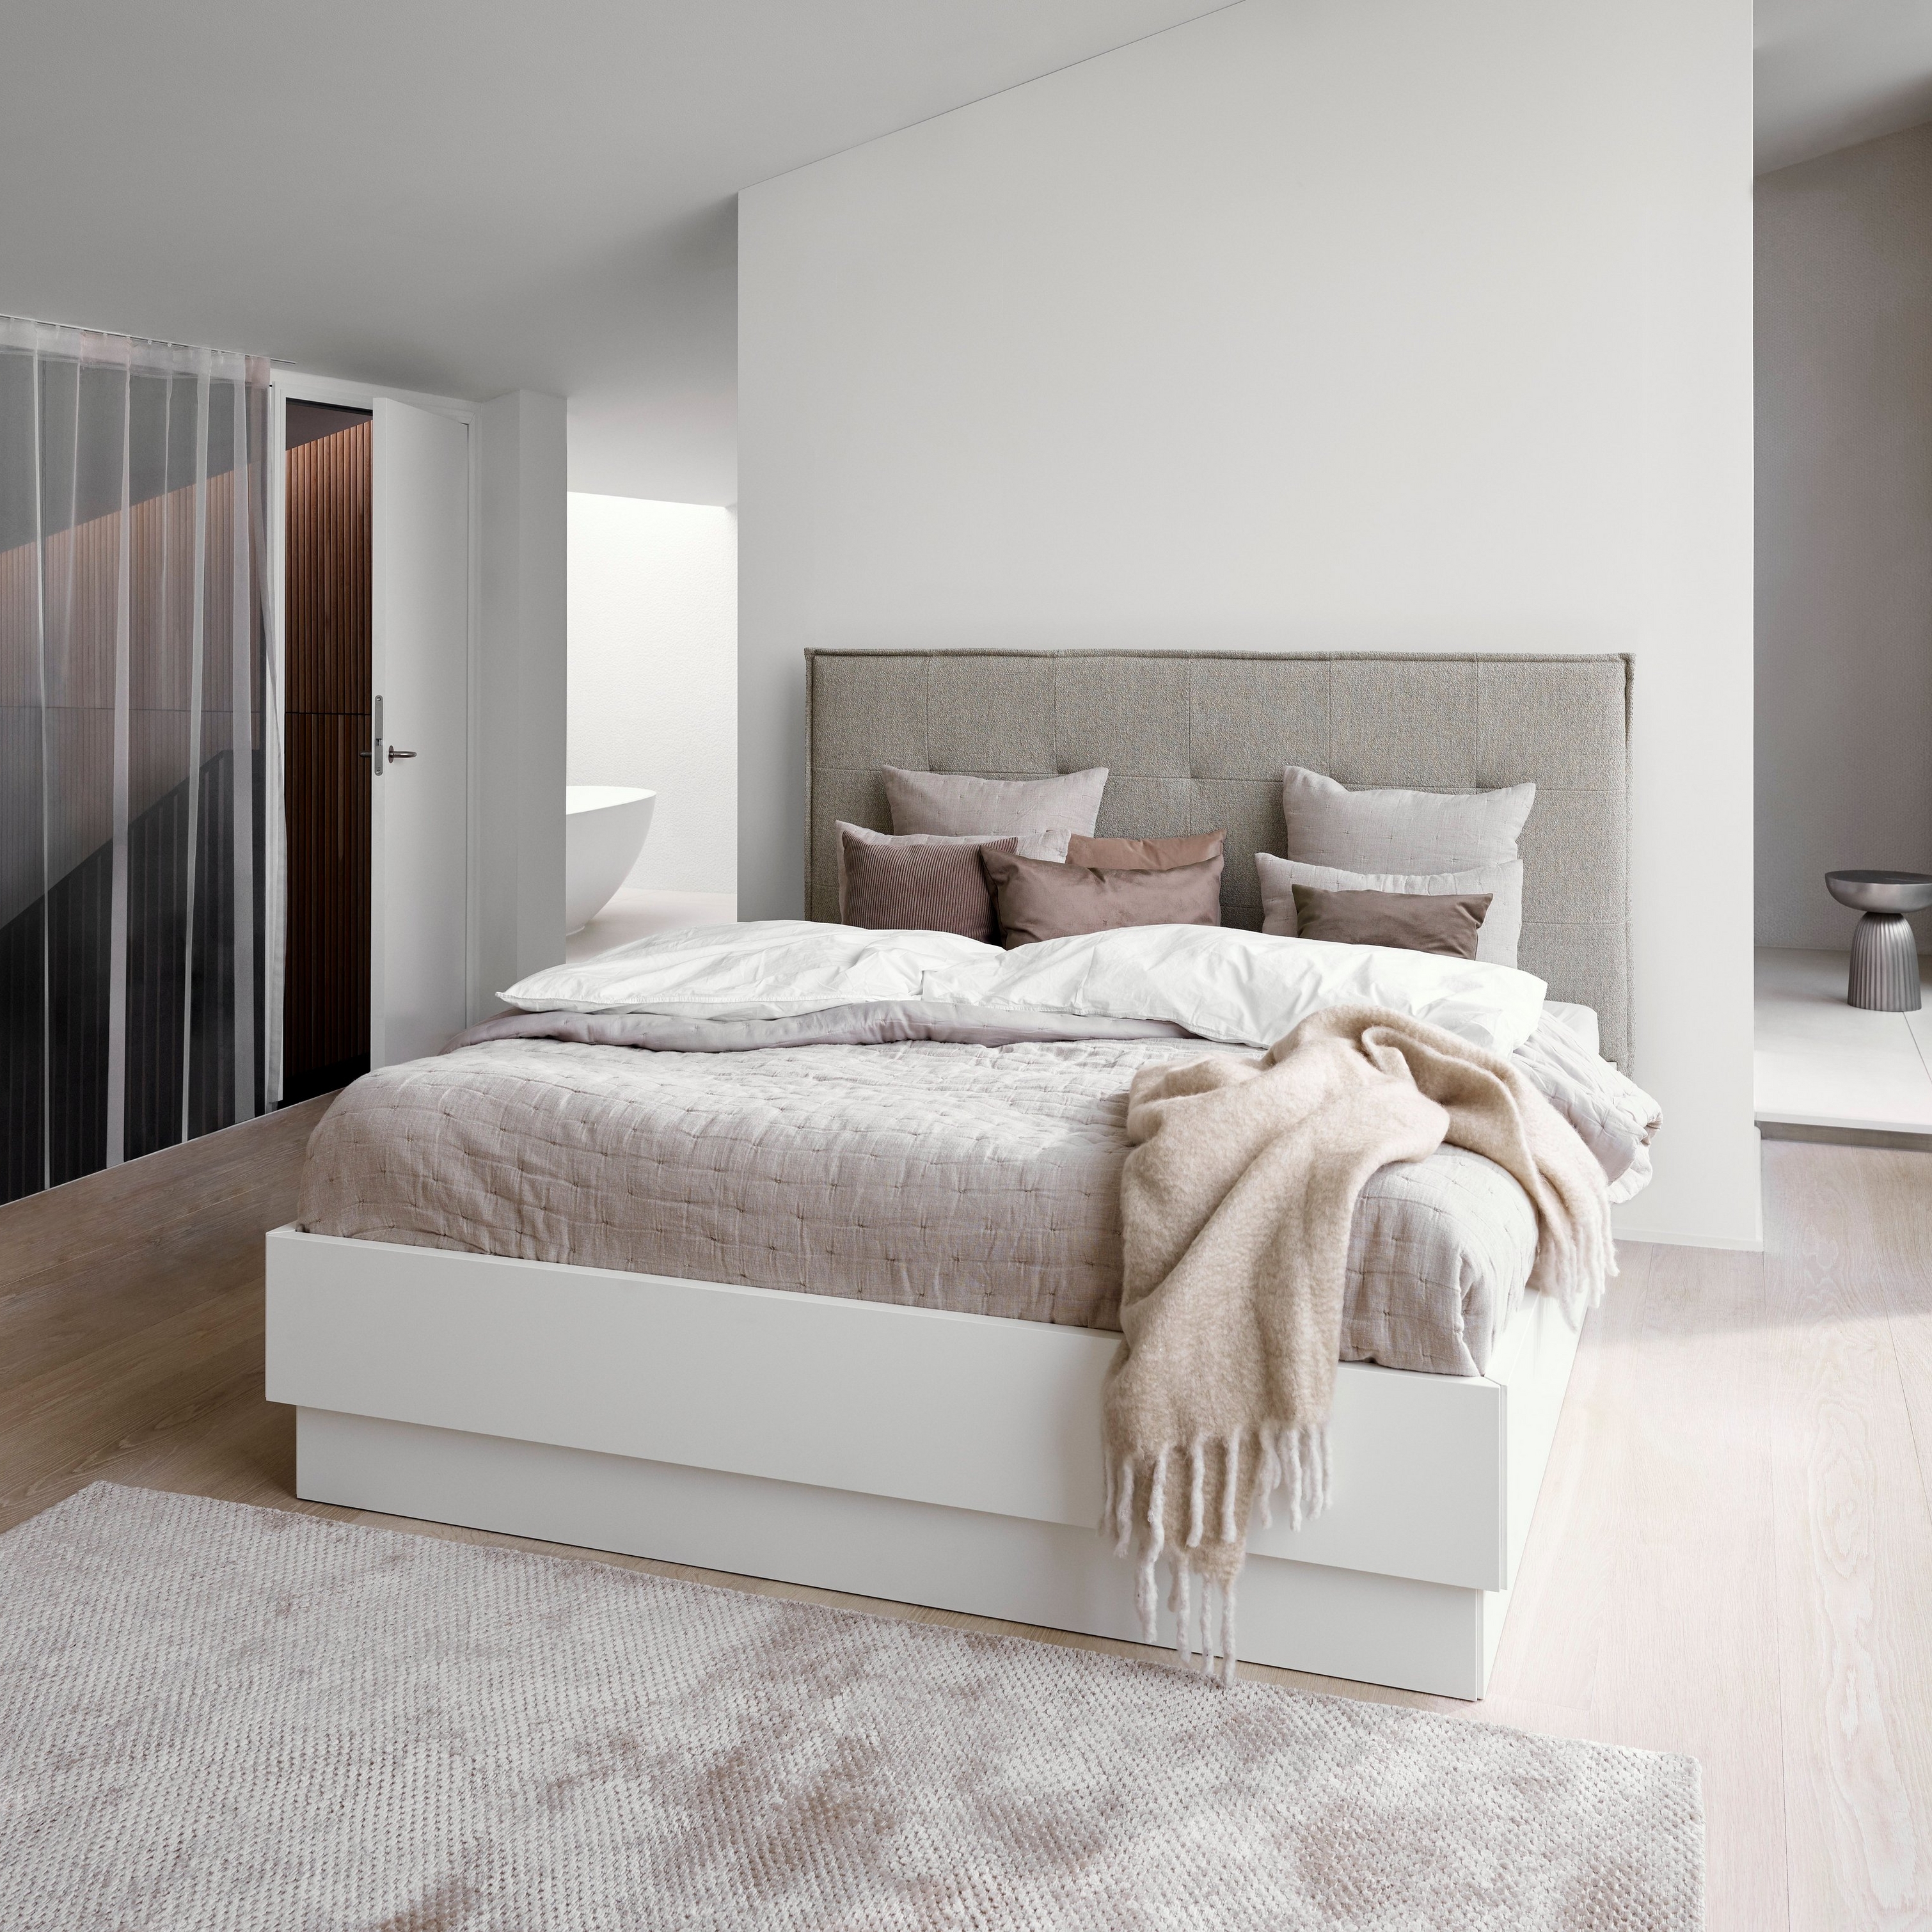 Chambre minimaliste avec un lit en revêtement tissé gris, du linge de lit blanc et un plaid beige texturé.